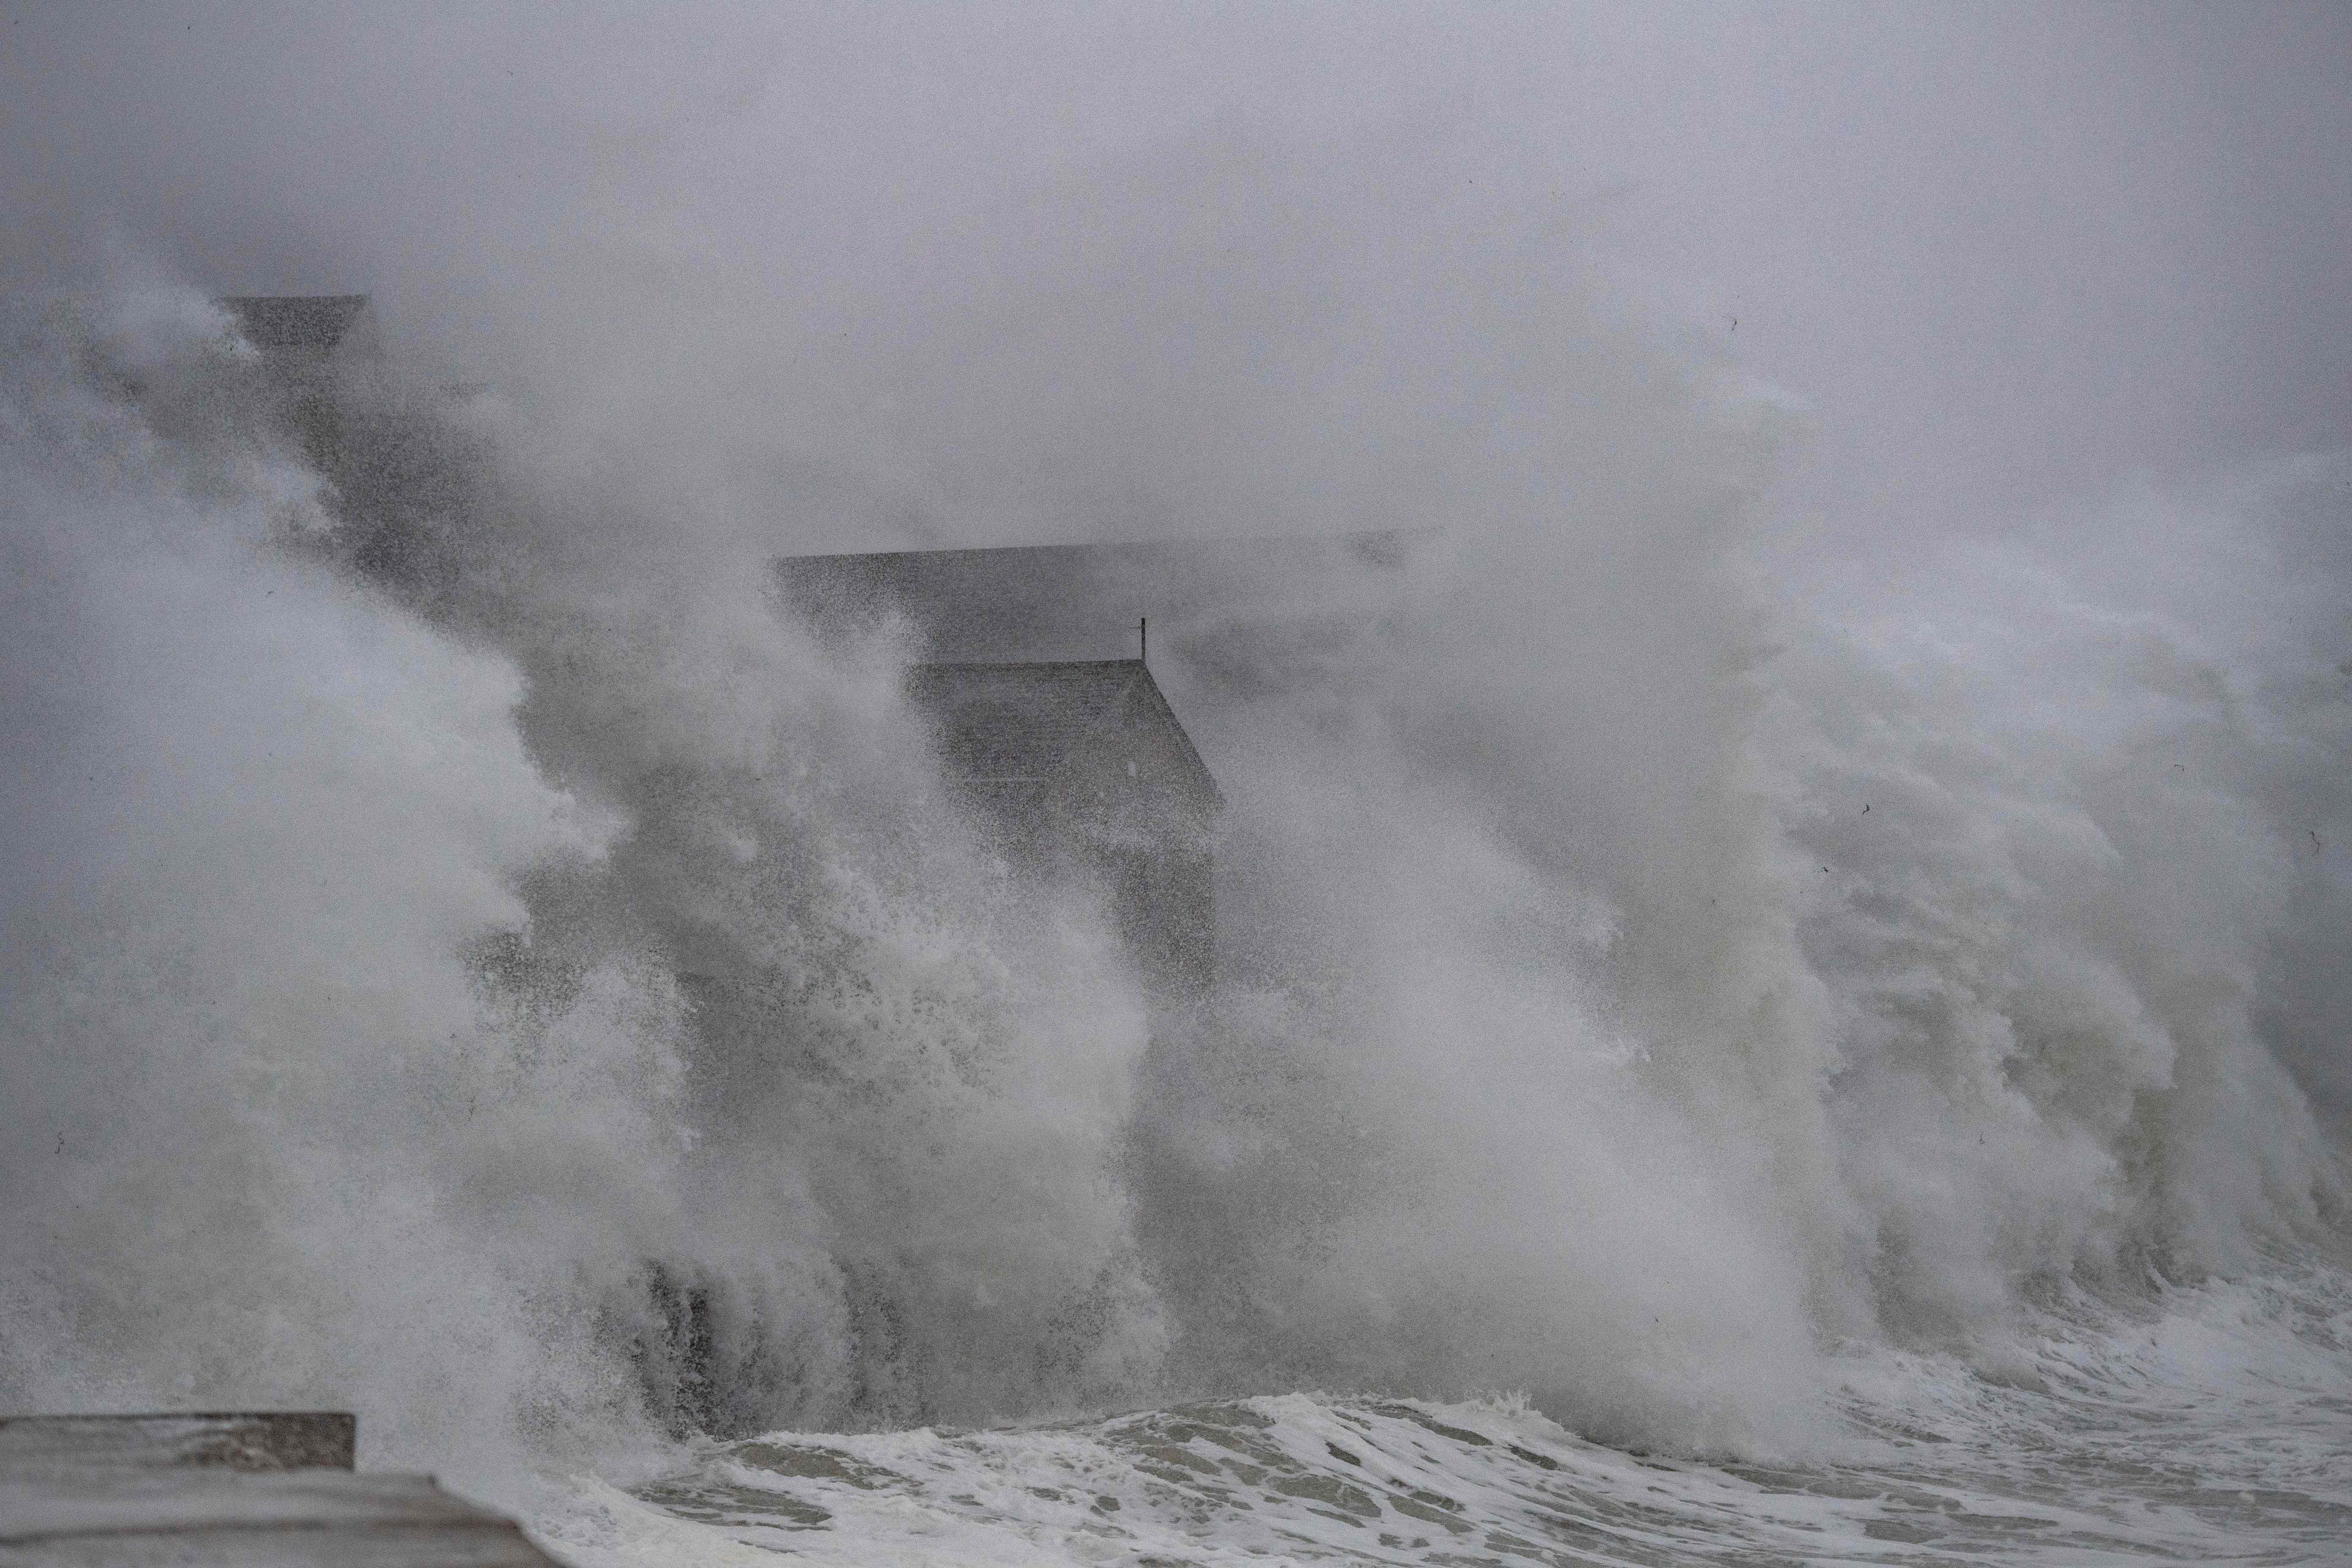 Las olas chocan contra casas frente al mar durante una tormenta del noreste en Scituate, Massachusetts, el 29 de enero del 2022. El cambio climático está provocando que las tormentas sean más poderosas, agravando los problemas del nivel del mar y la erosión